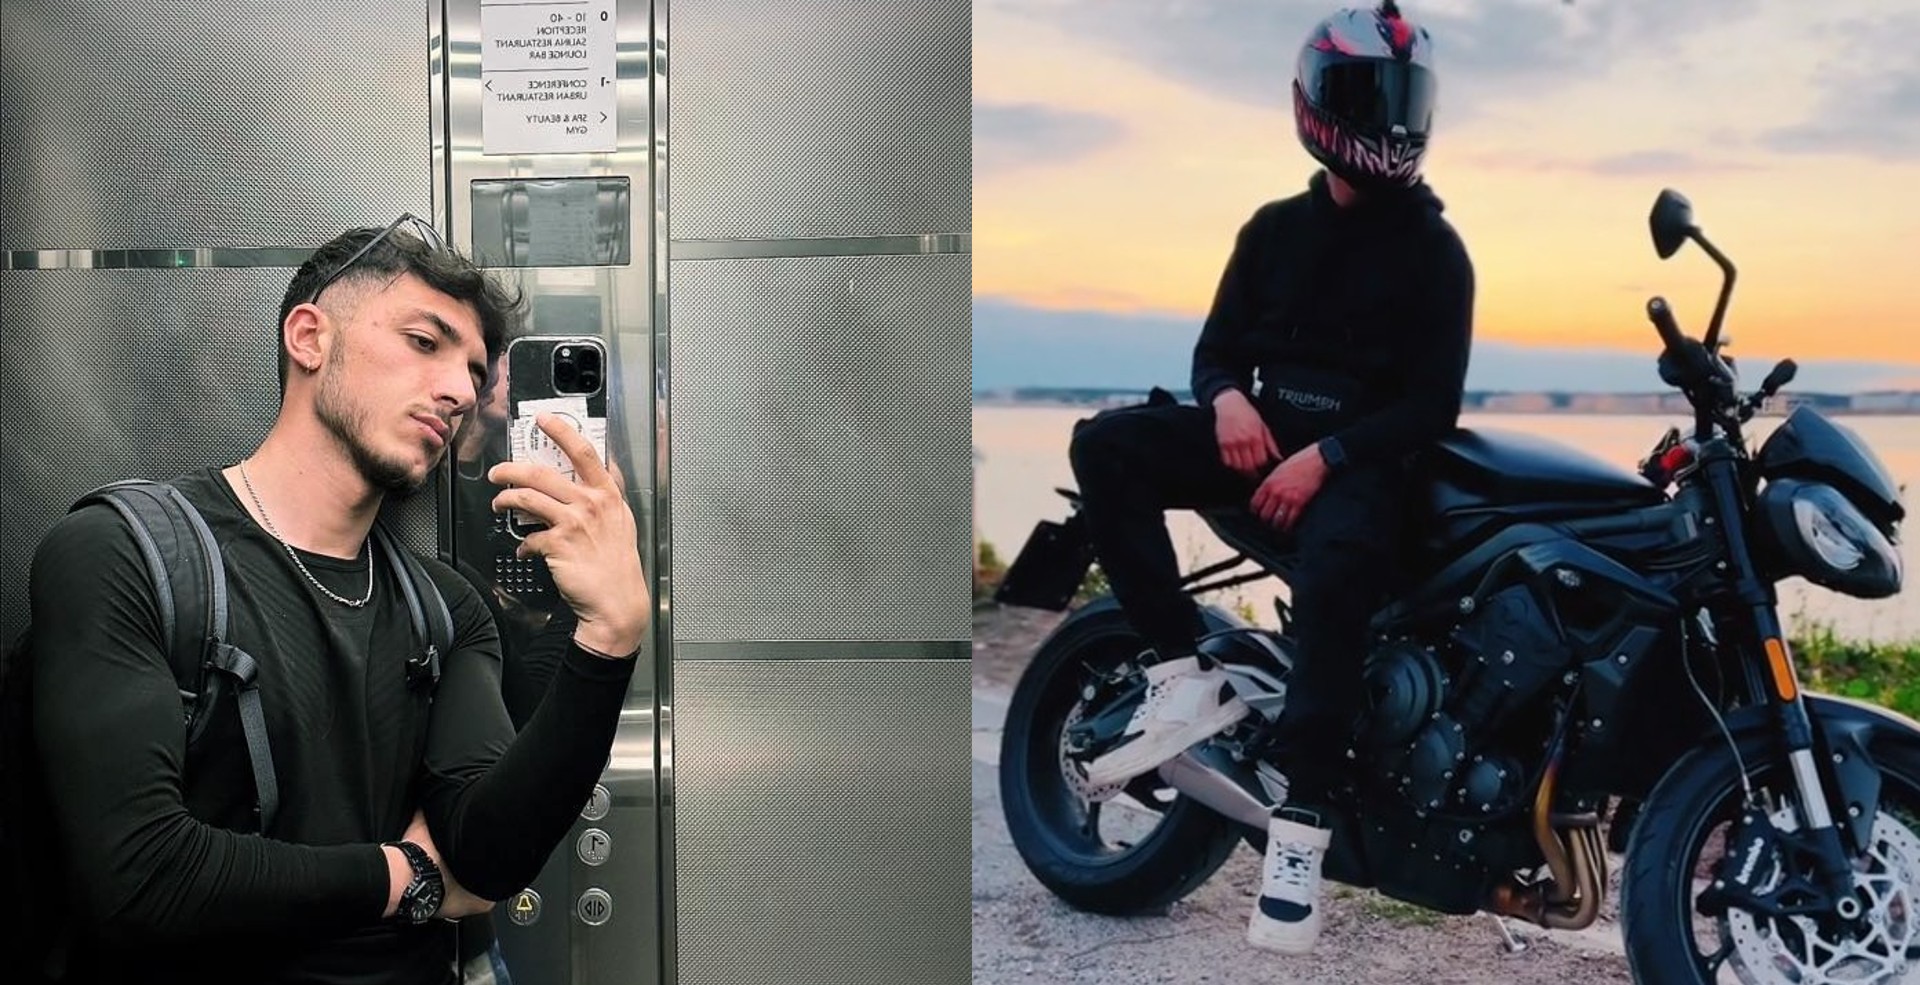 Incidente mortale a Posillipo, quartiere della Napoli bene: Alberto Zazzaro perde la vita a 23 anni in sella alla sua moto